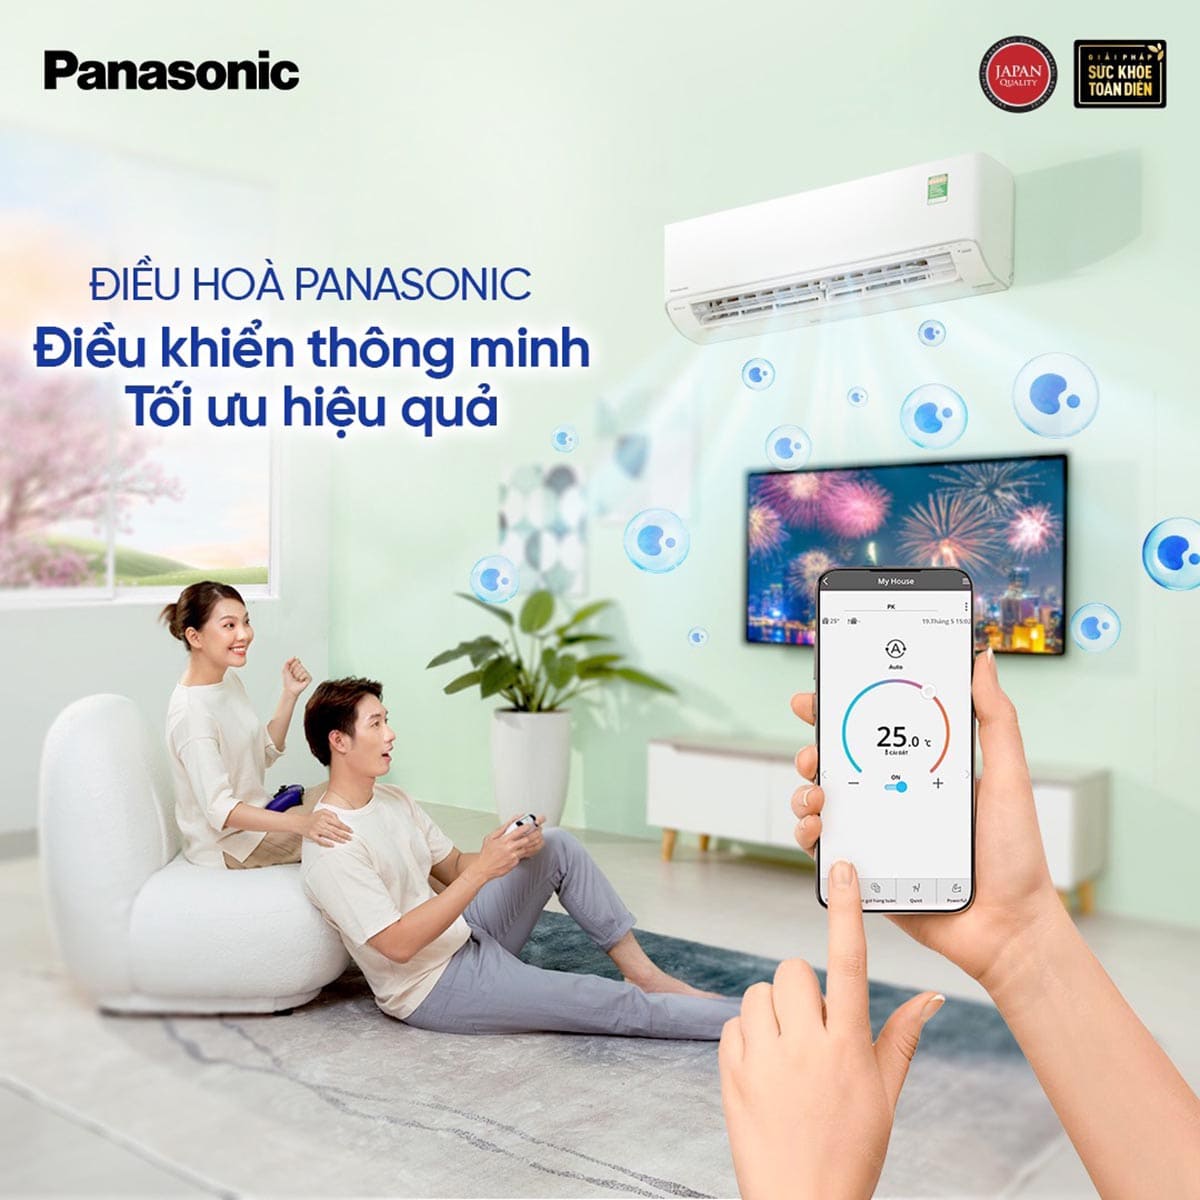 Ứng dụng Panasonic Comfort Cloud tương hỗ tinh chỉnh máy mức giá Panasonic